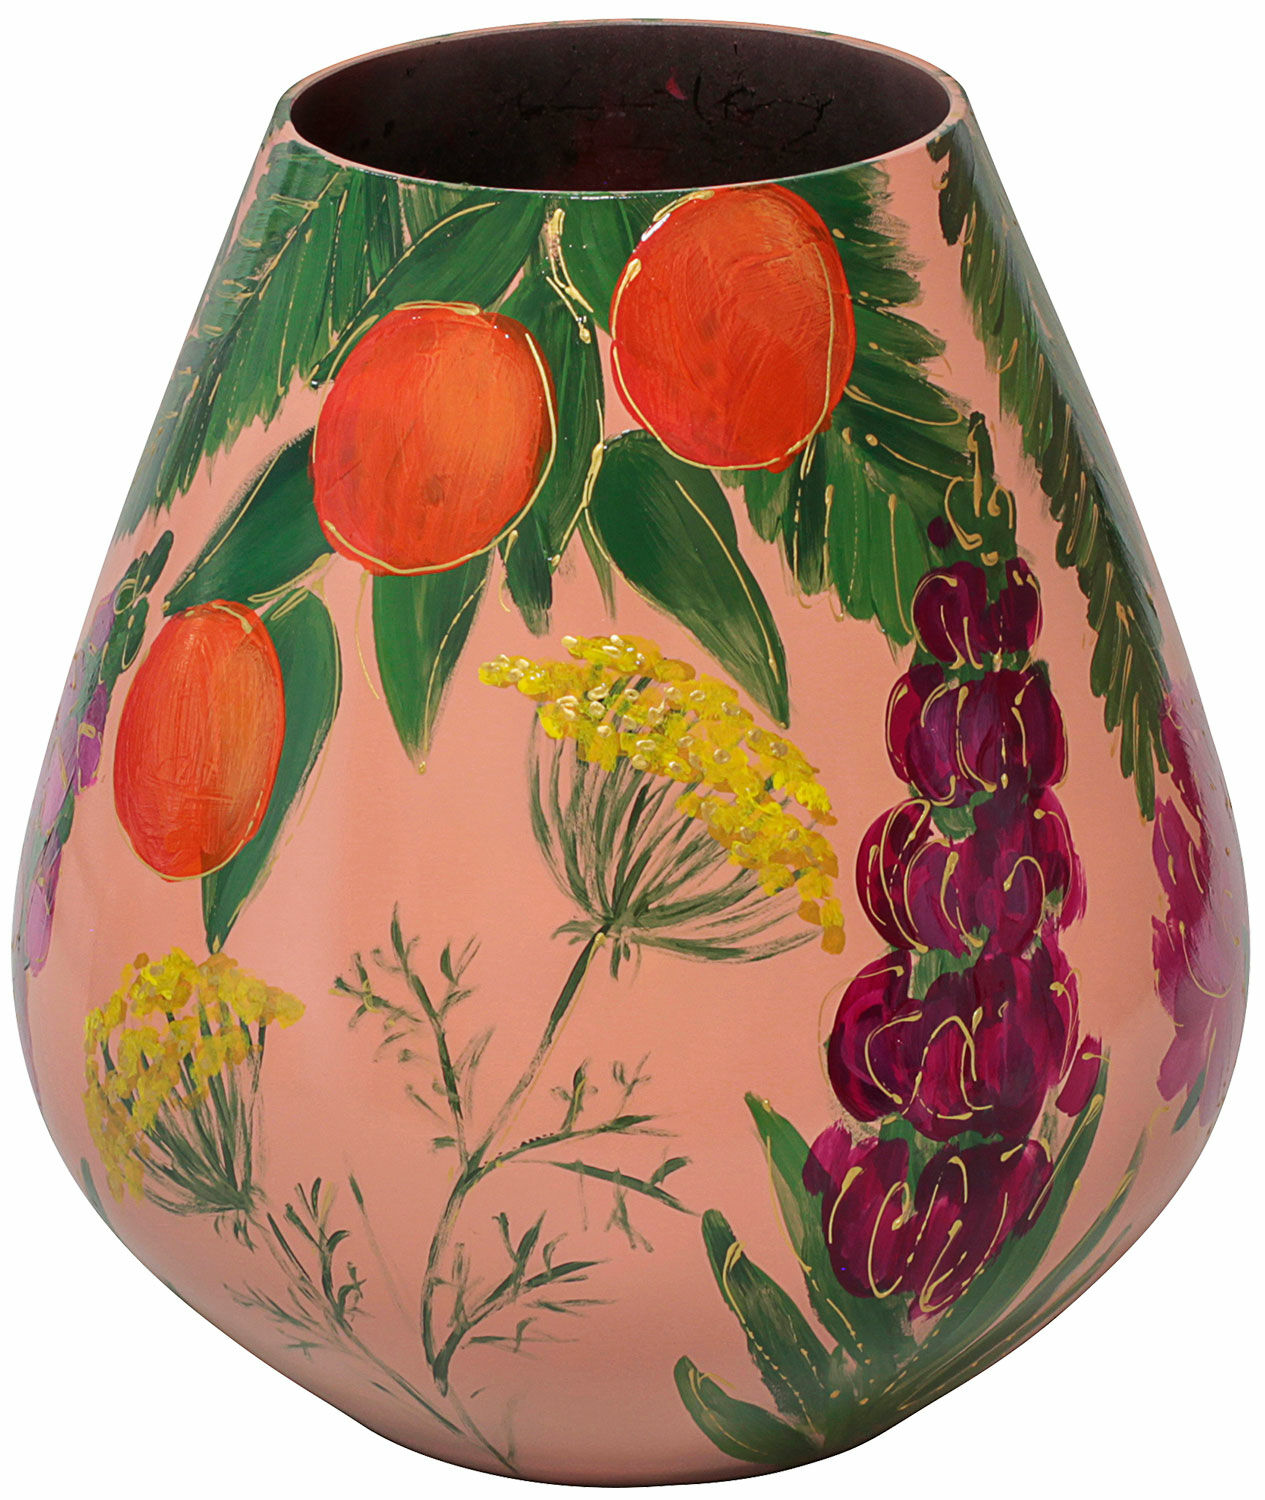 Glass vase "Orange Garden" by Milou van Schaik Martinet